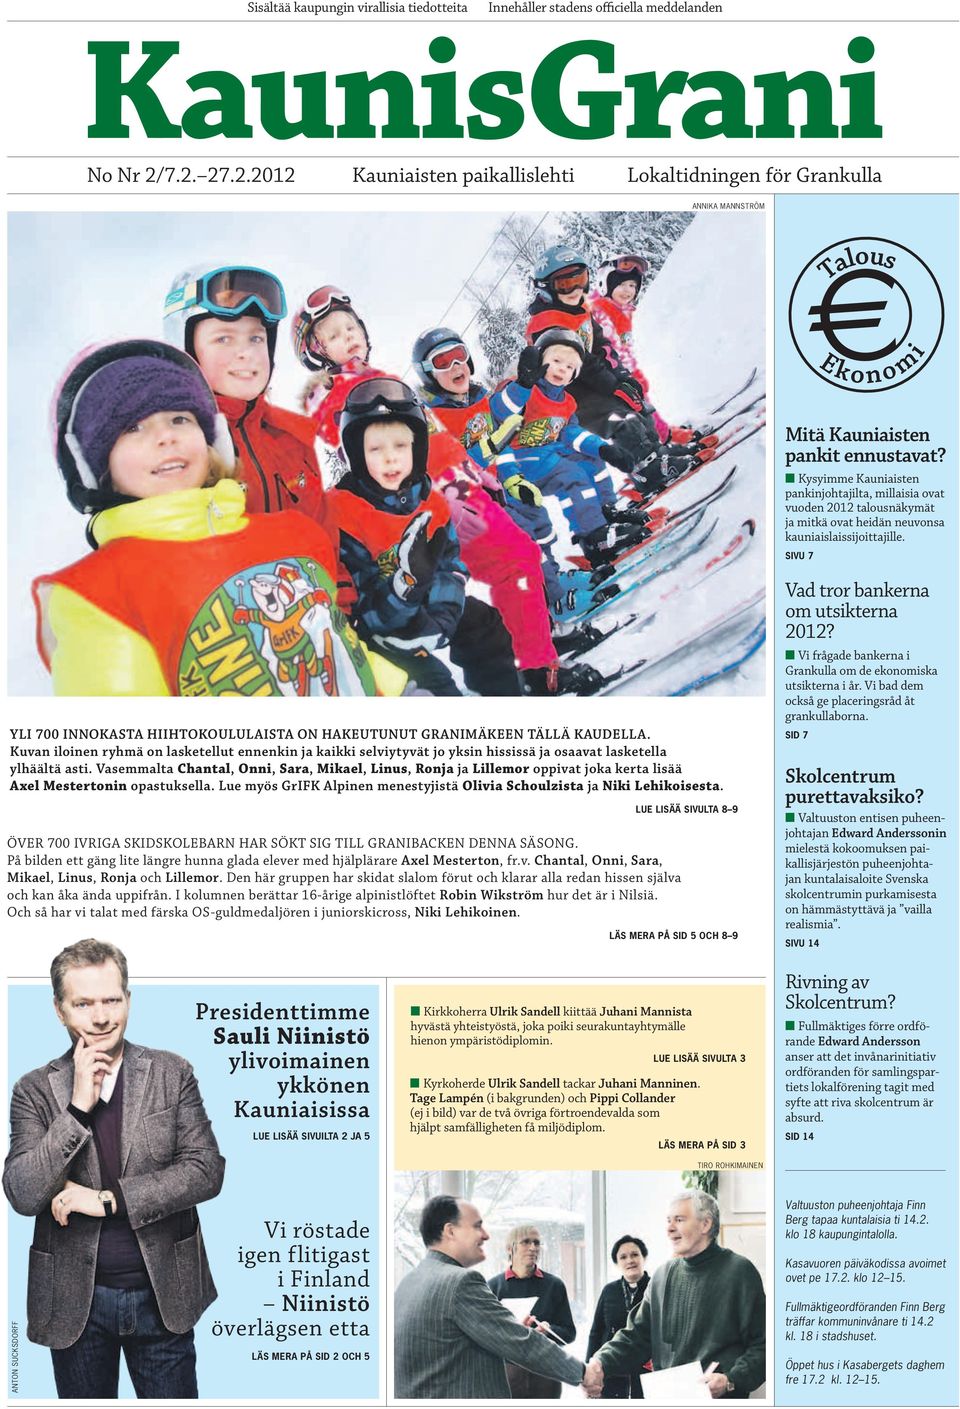 sivu 7 Yli 700 innokasta hiihtokoululaista on hakeutunut Granimäkeen tällä kaudella.